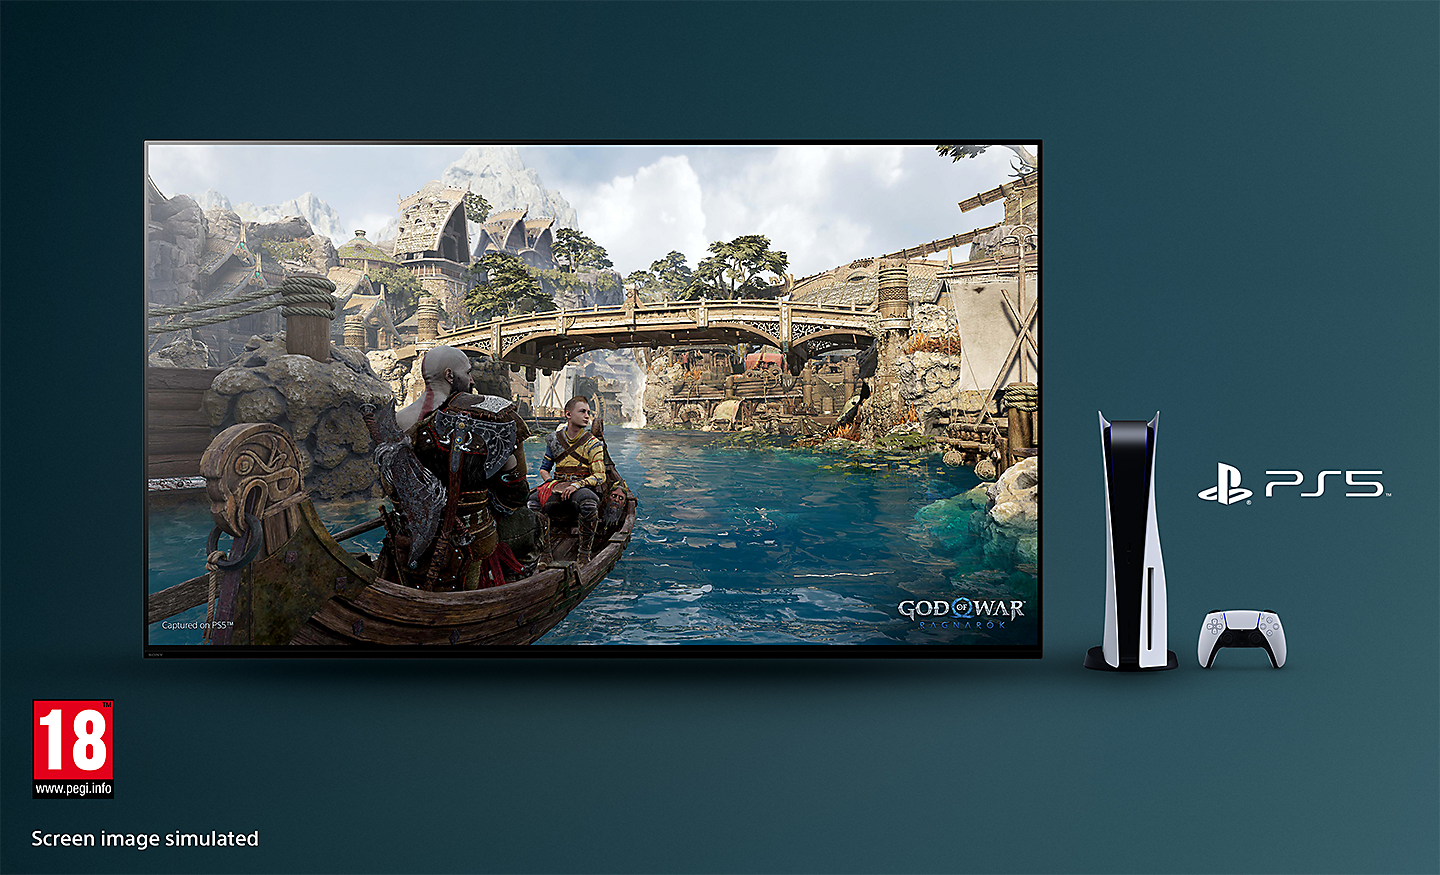 Τηλεόραση BRAVIA με στιγμιότυπο του God of War: Το Ragnarok δείχνει μια βάρκα σε ένα ποτάμι και μια γέφυρα στο φόντο με κονσόλα PS5™, χειριστήριο και το λογότυπο PS5™ στα δεξιά της τηλεόρασης.